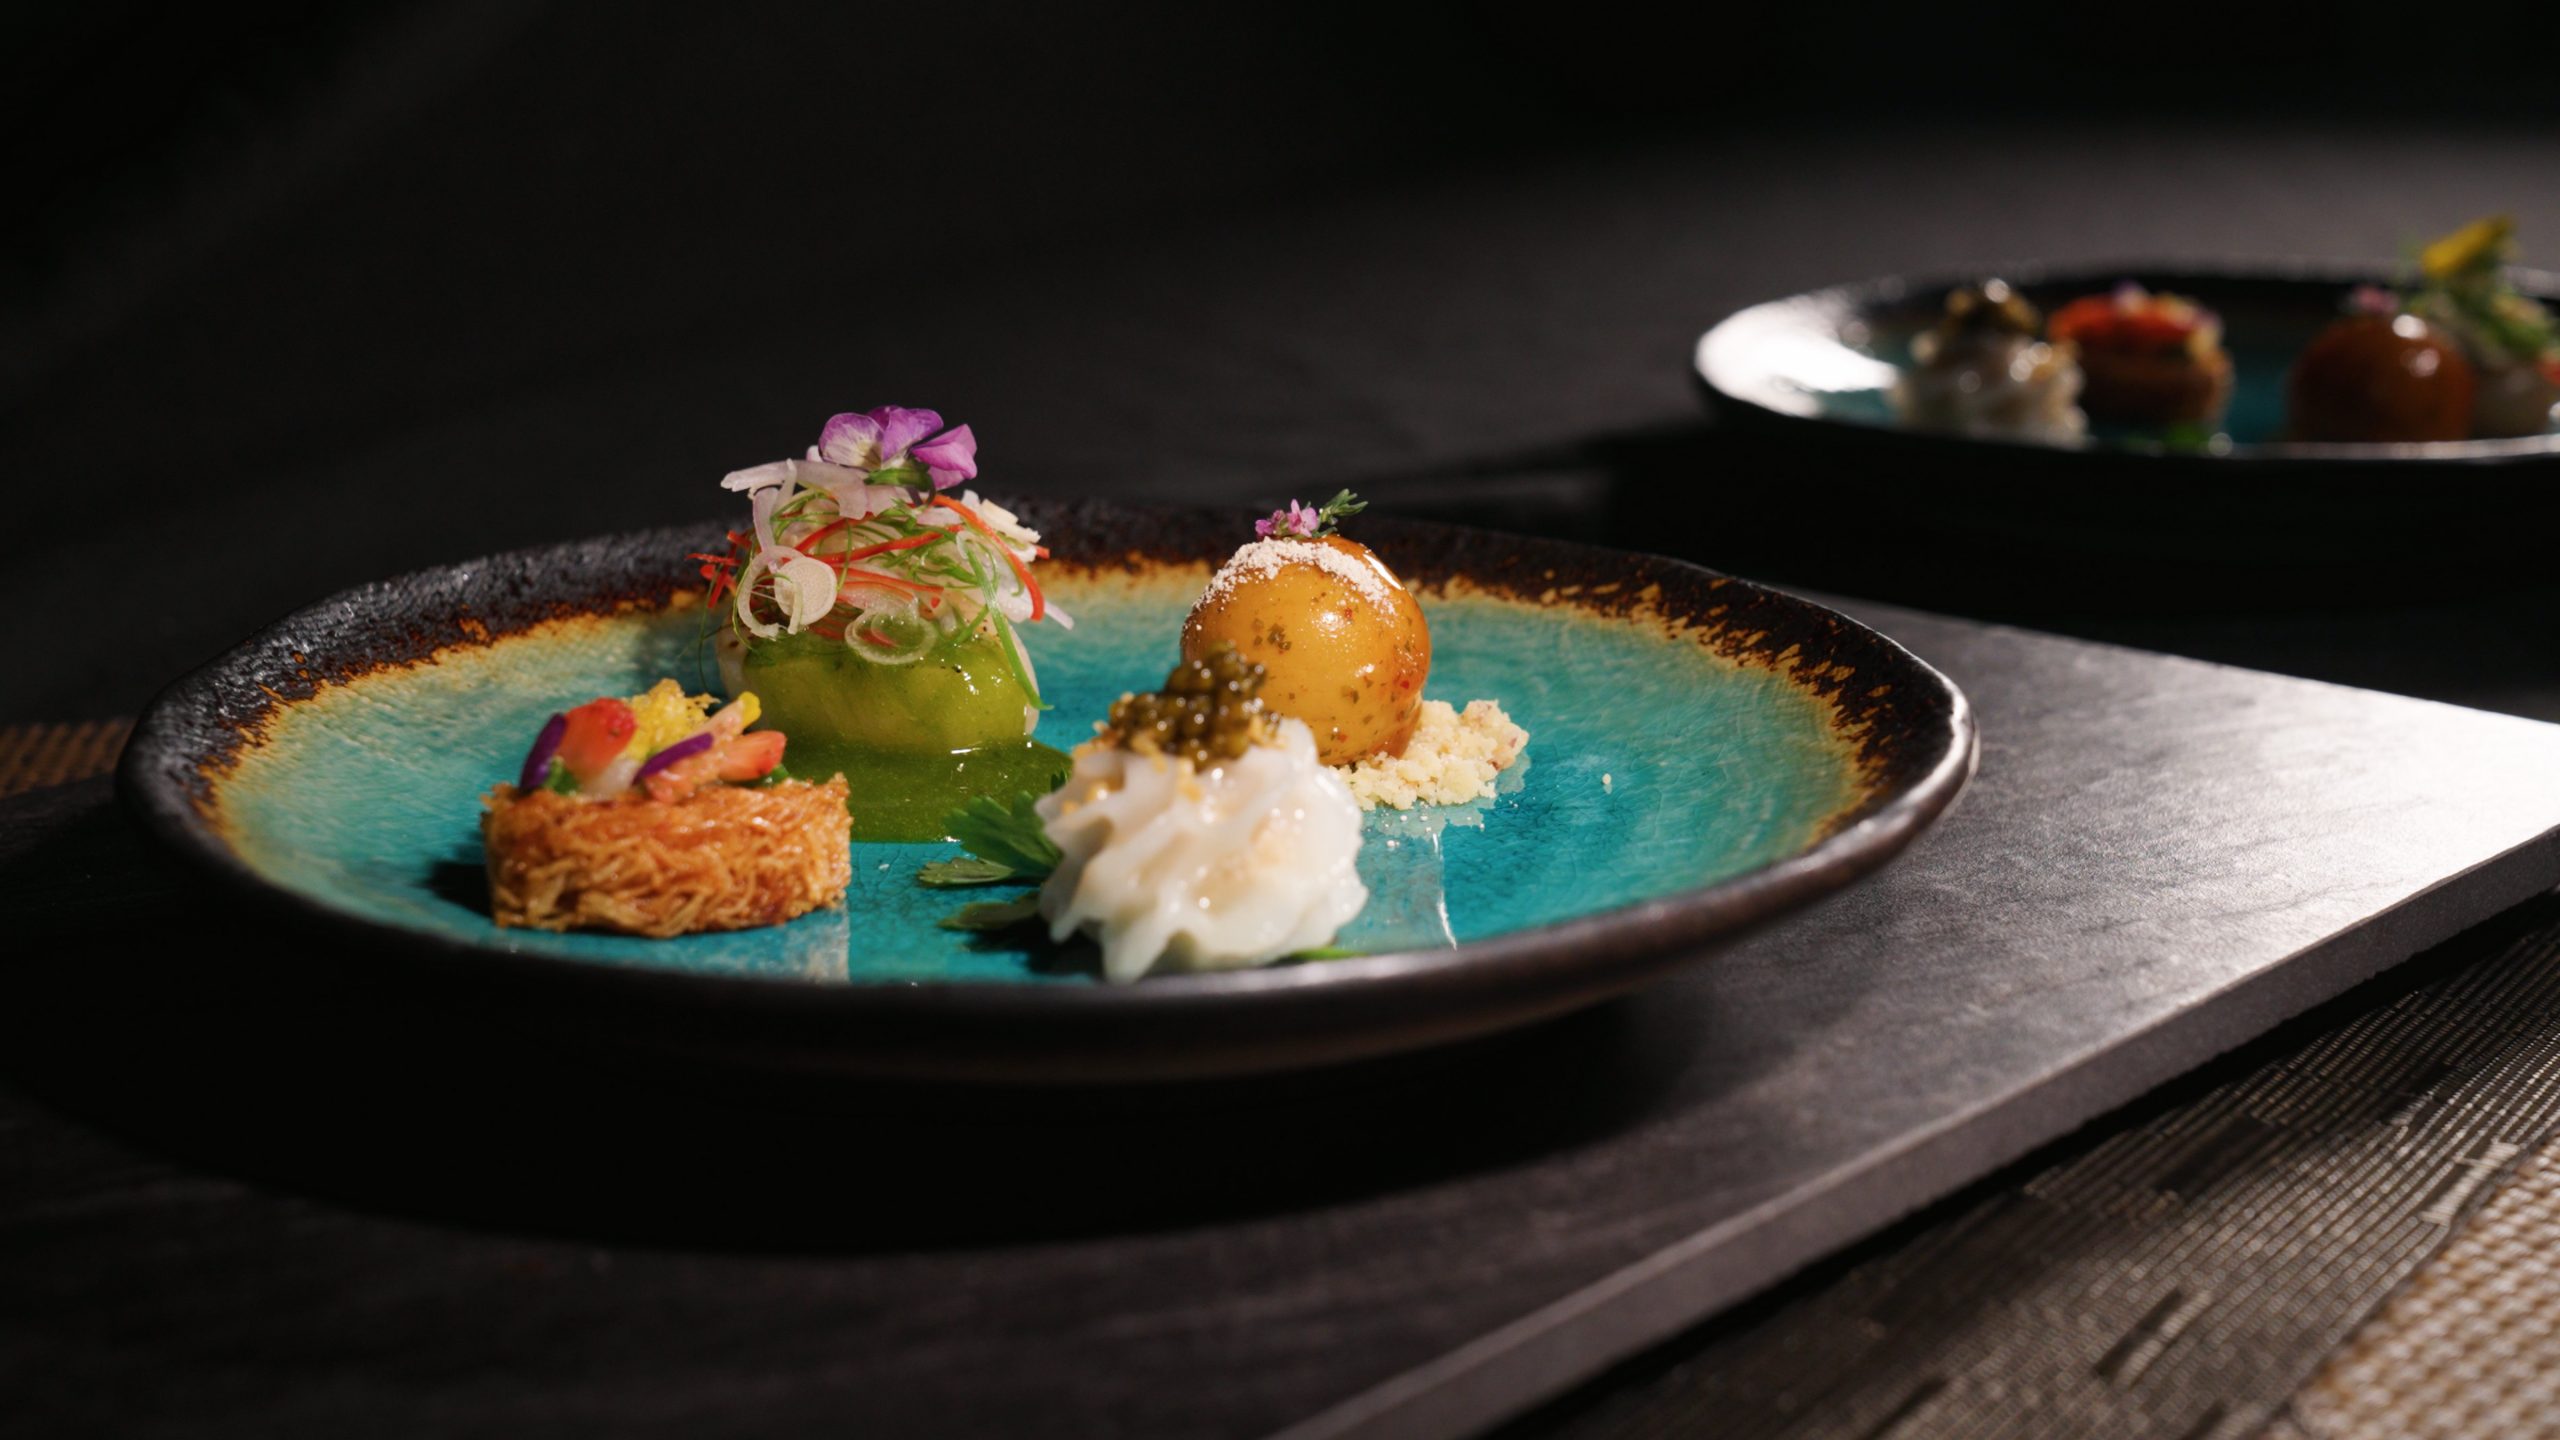 The Londoner Macao Grand Celebration dinner appetiser platter by Nongnuch “Nuch” Sae-eiw